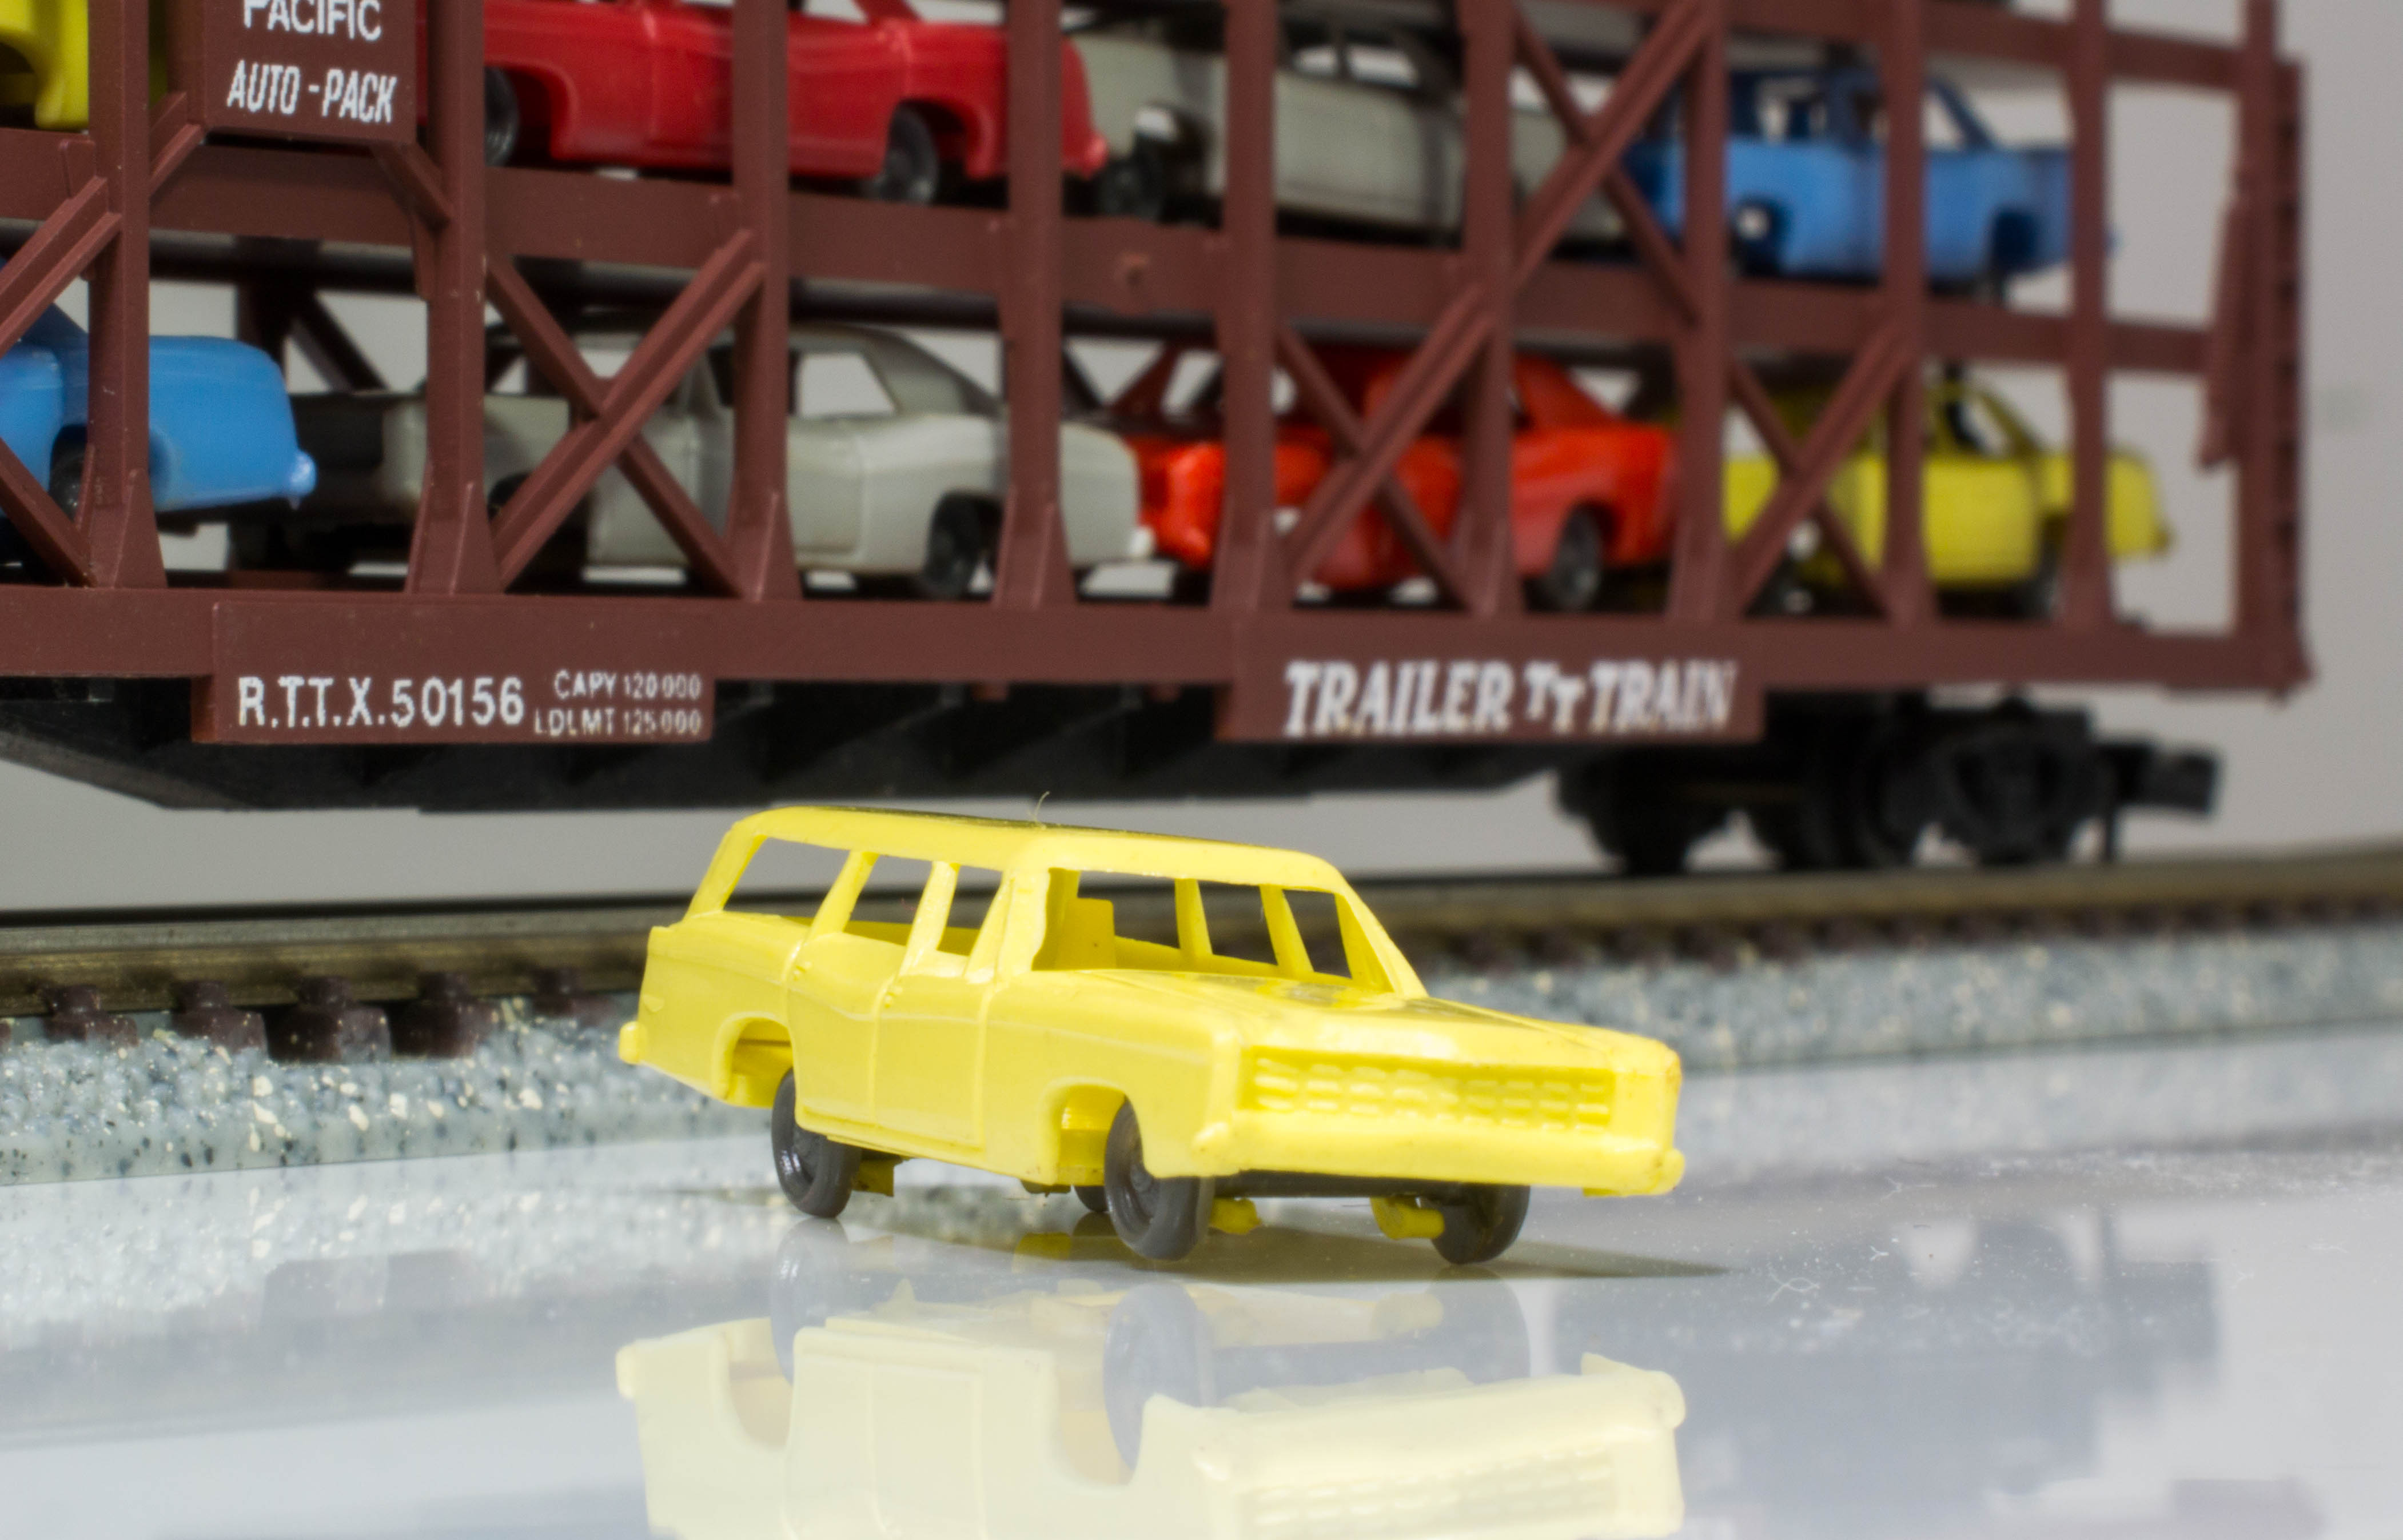 ポポンデッタ】国鉄ク5000形貨車と世界の車運車を比べてみた - 鉄道模型部